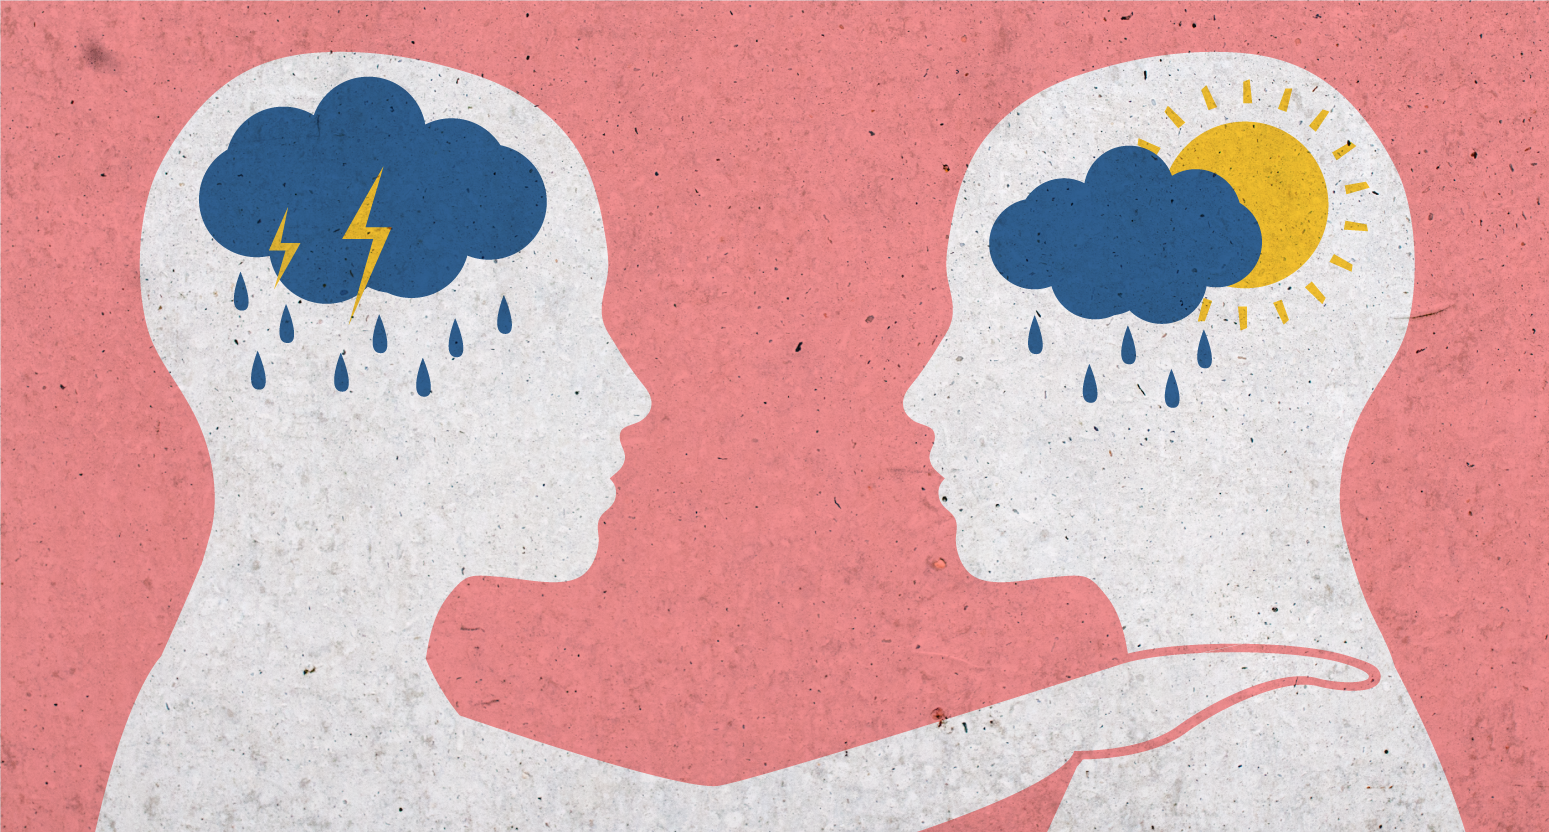 La Inteligencia Emocional y su relación con la Empatía